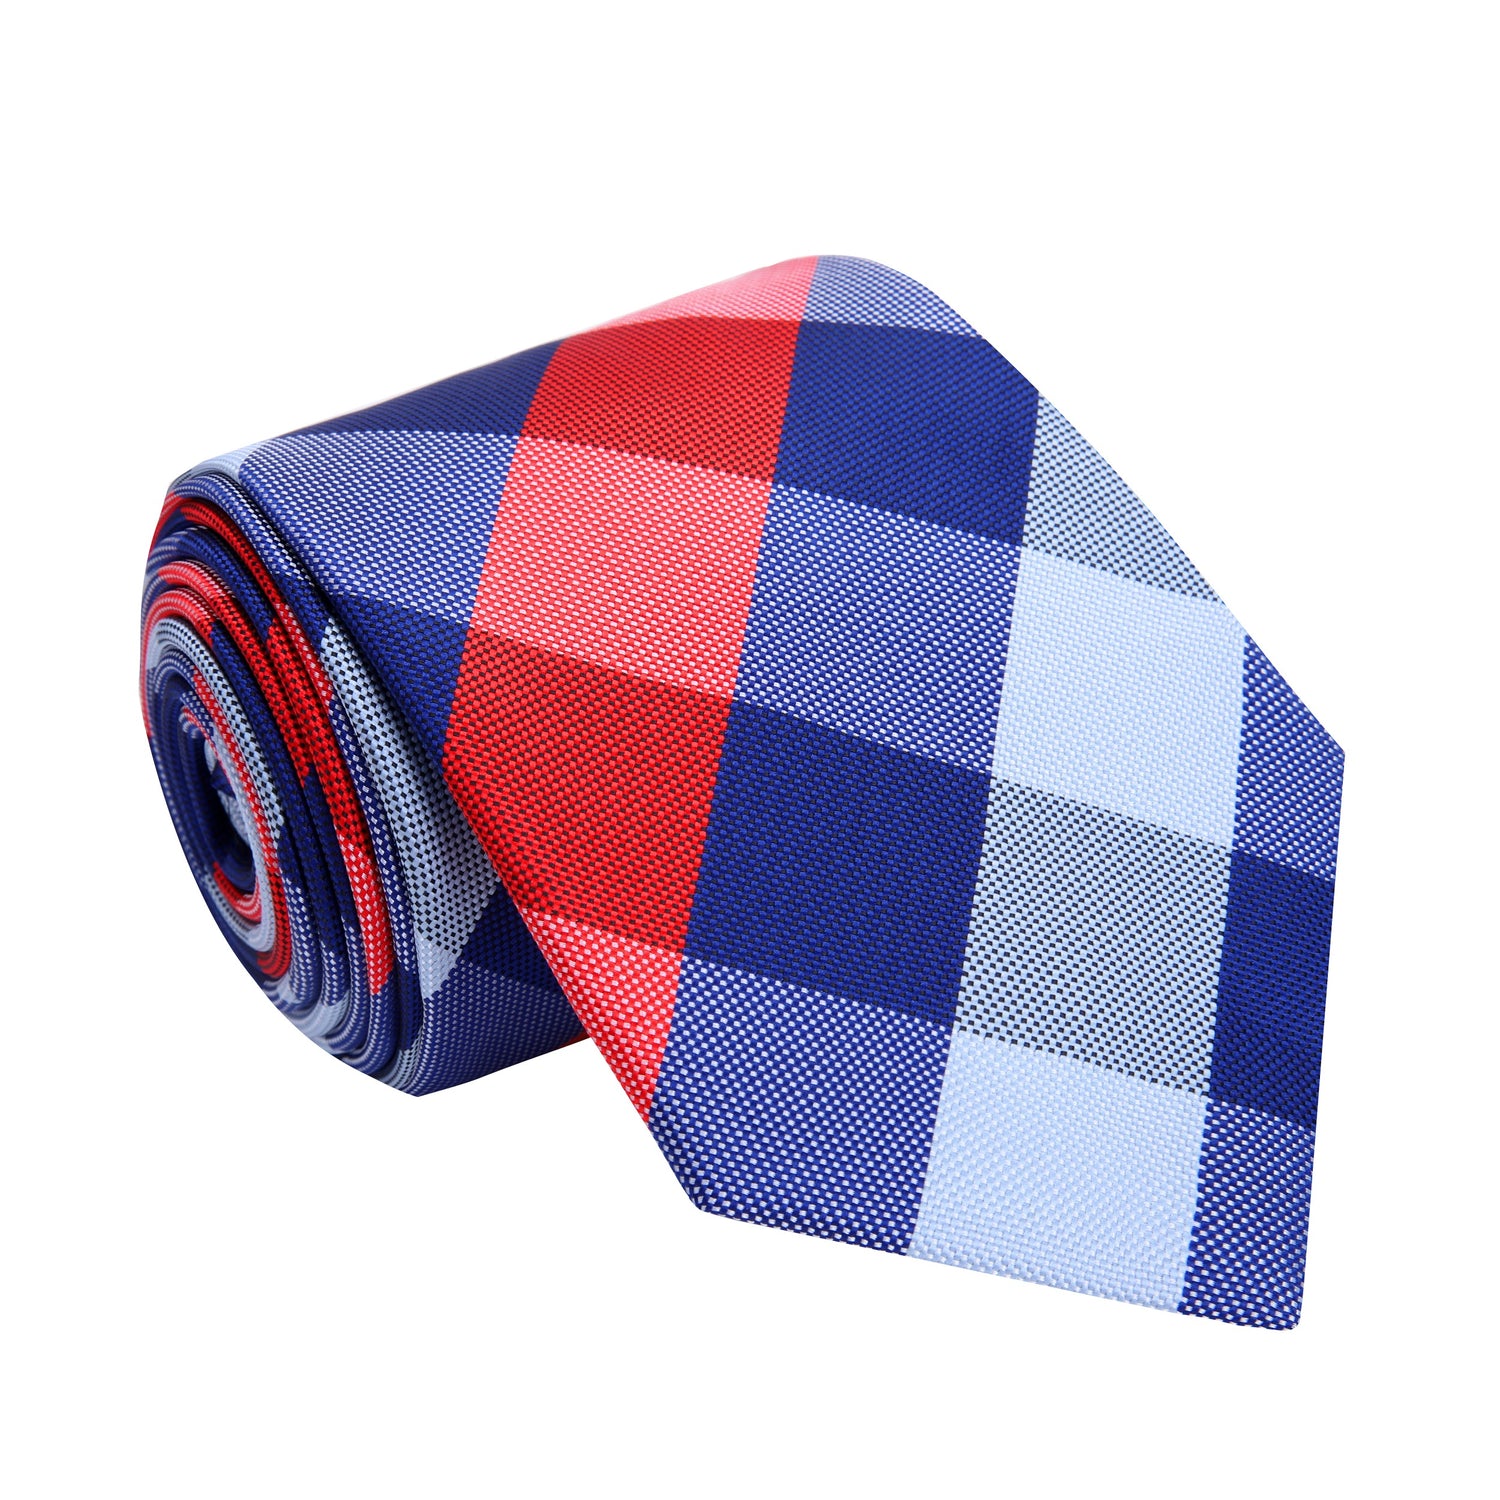 A Red, White, Blue Plaid Pattern Silk Necktie